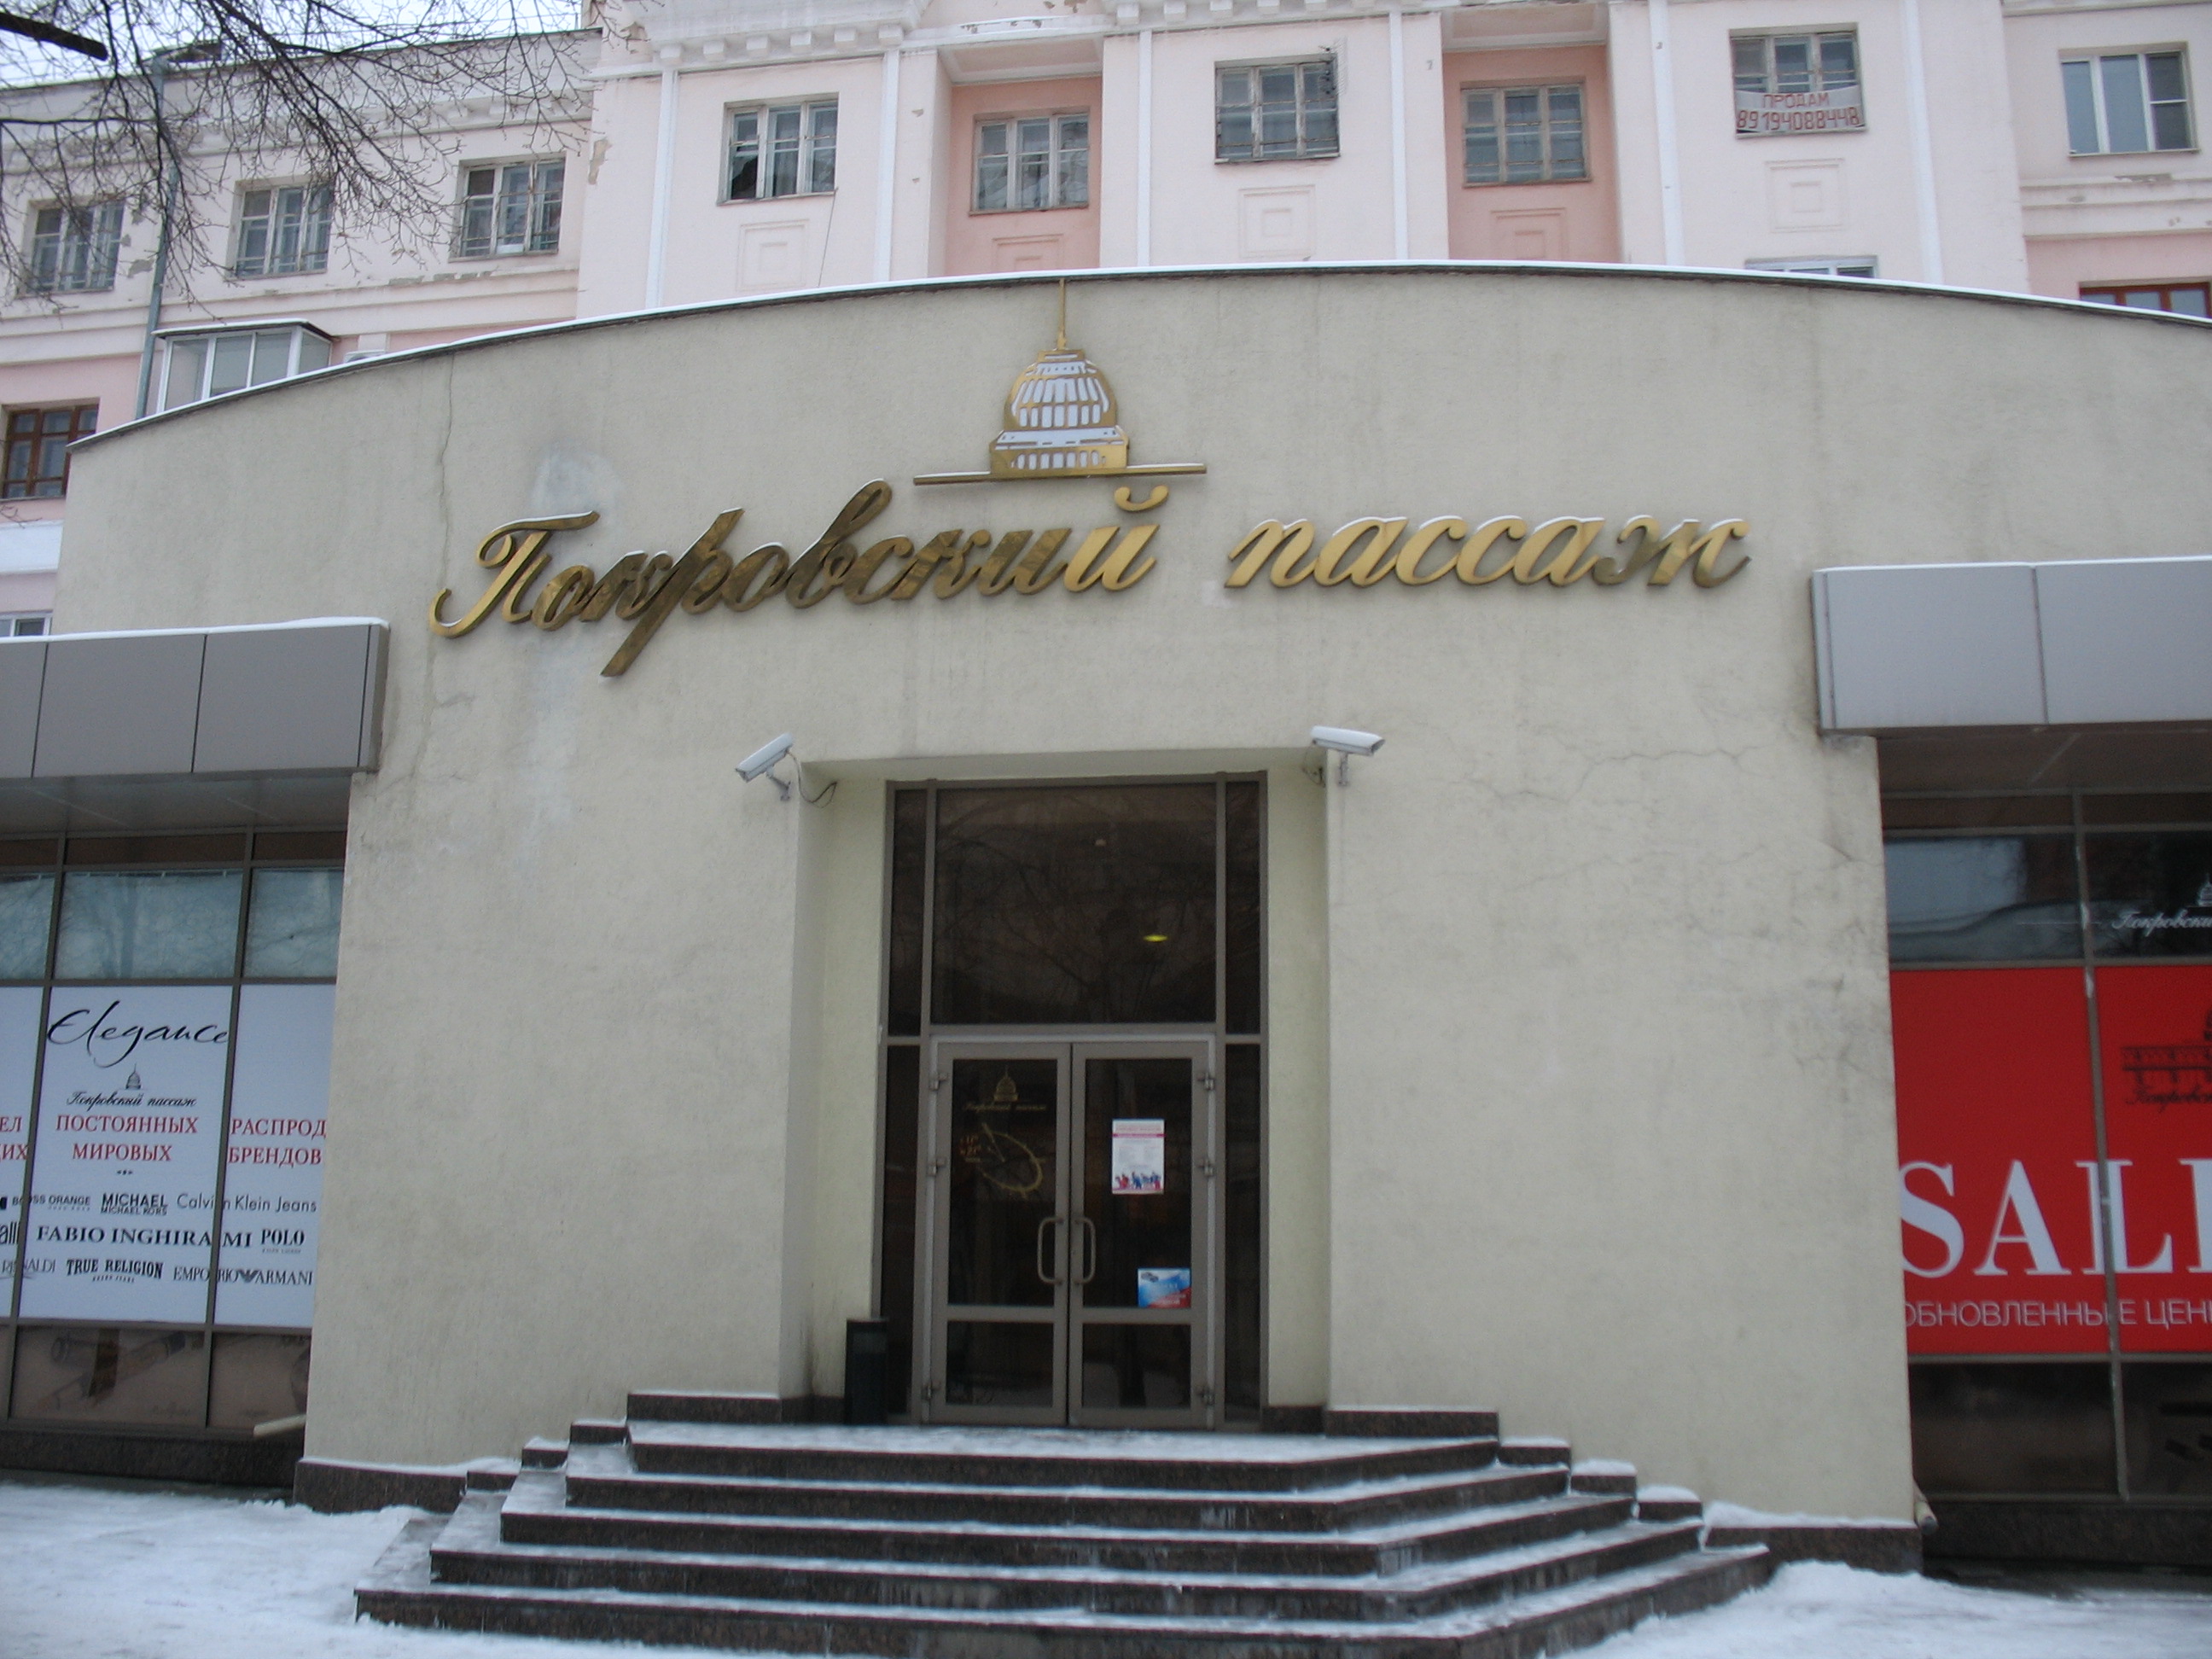 Покровский Пассаж Интернет Магазин Екатеринбург